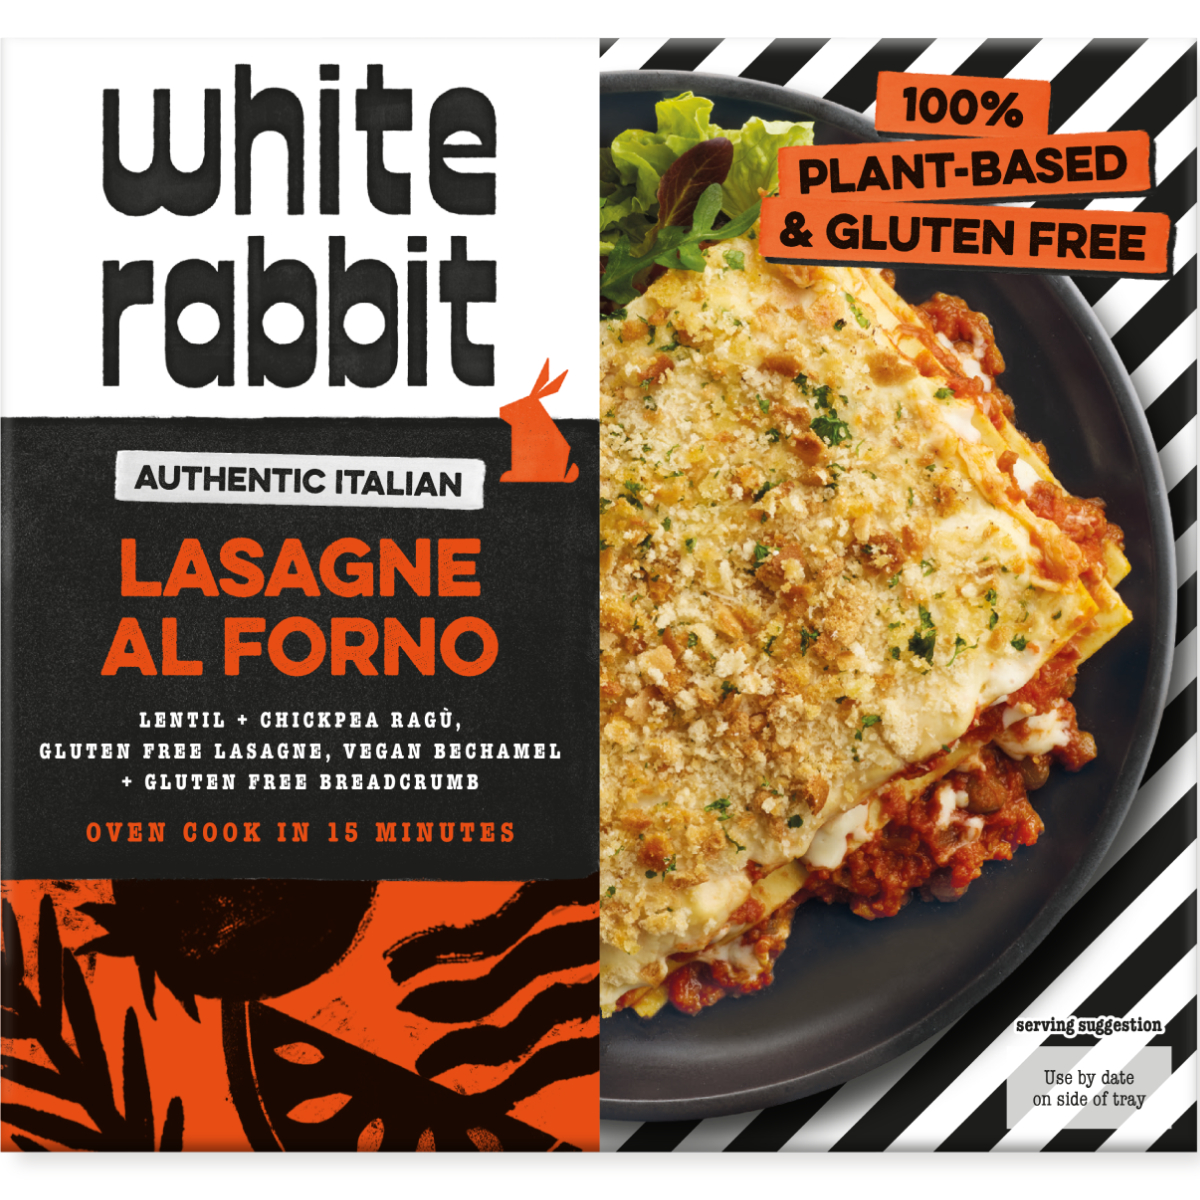 White Rabbit Lasagne Al Forno